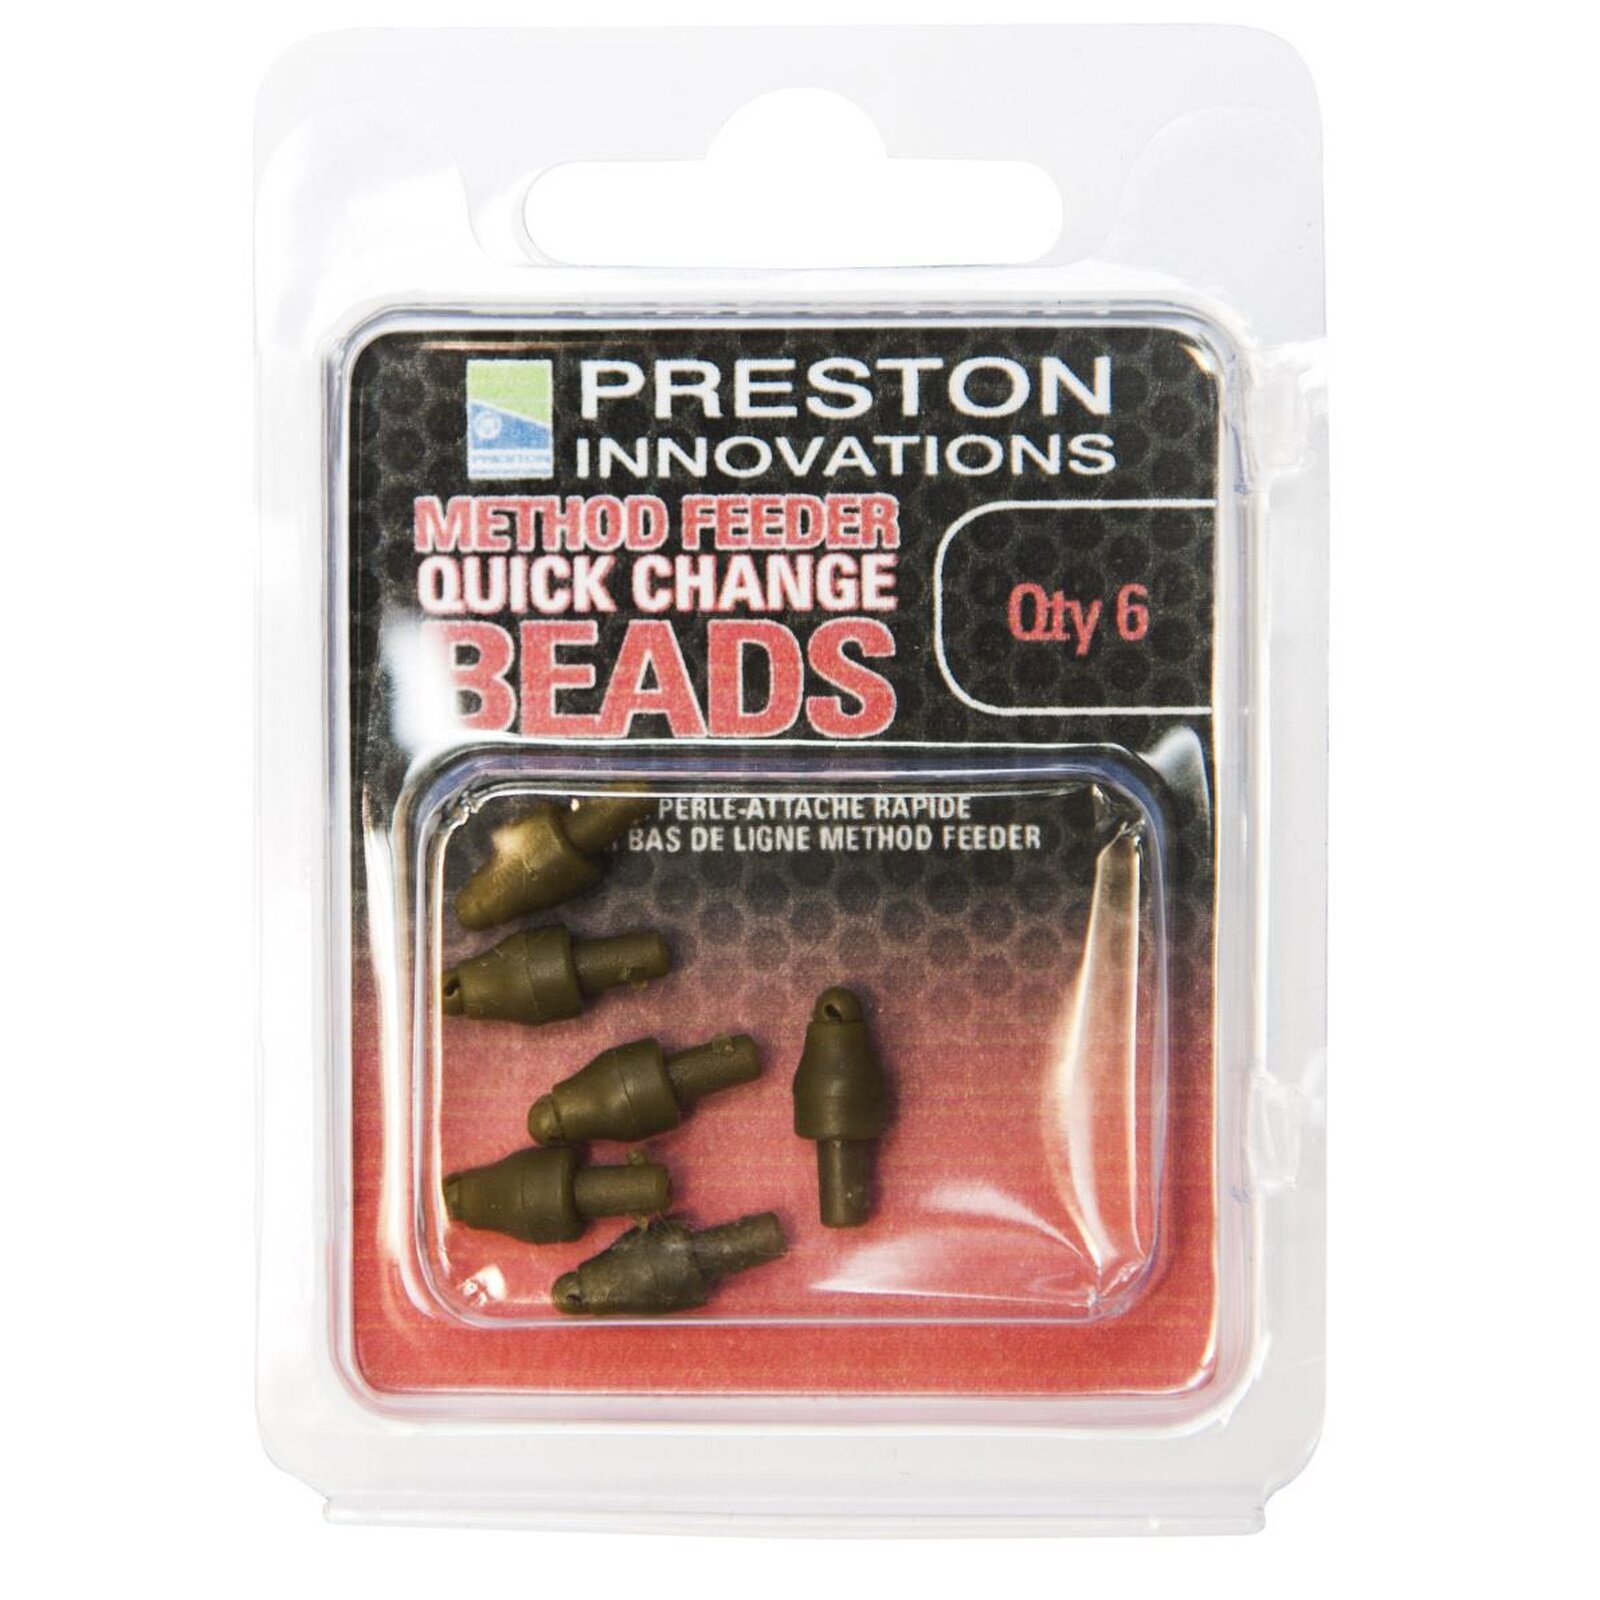 Preston Method Feeder Quick Change Beads 6 Stk.